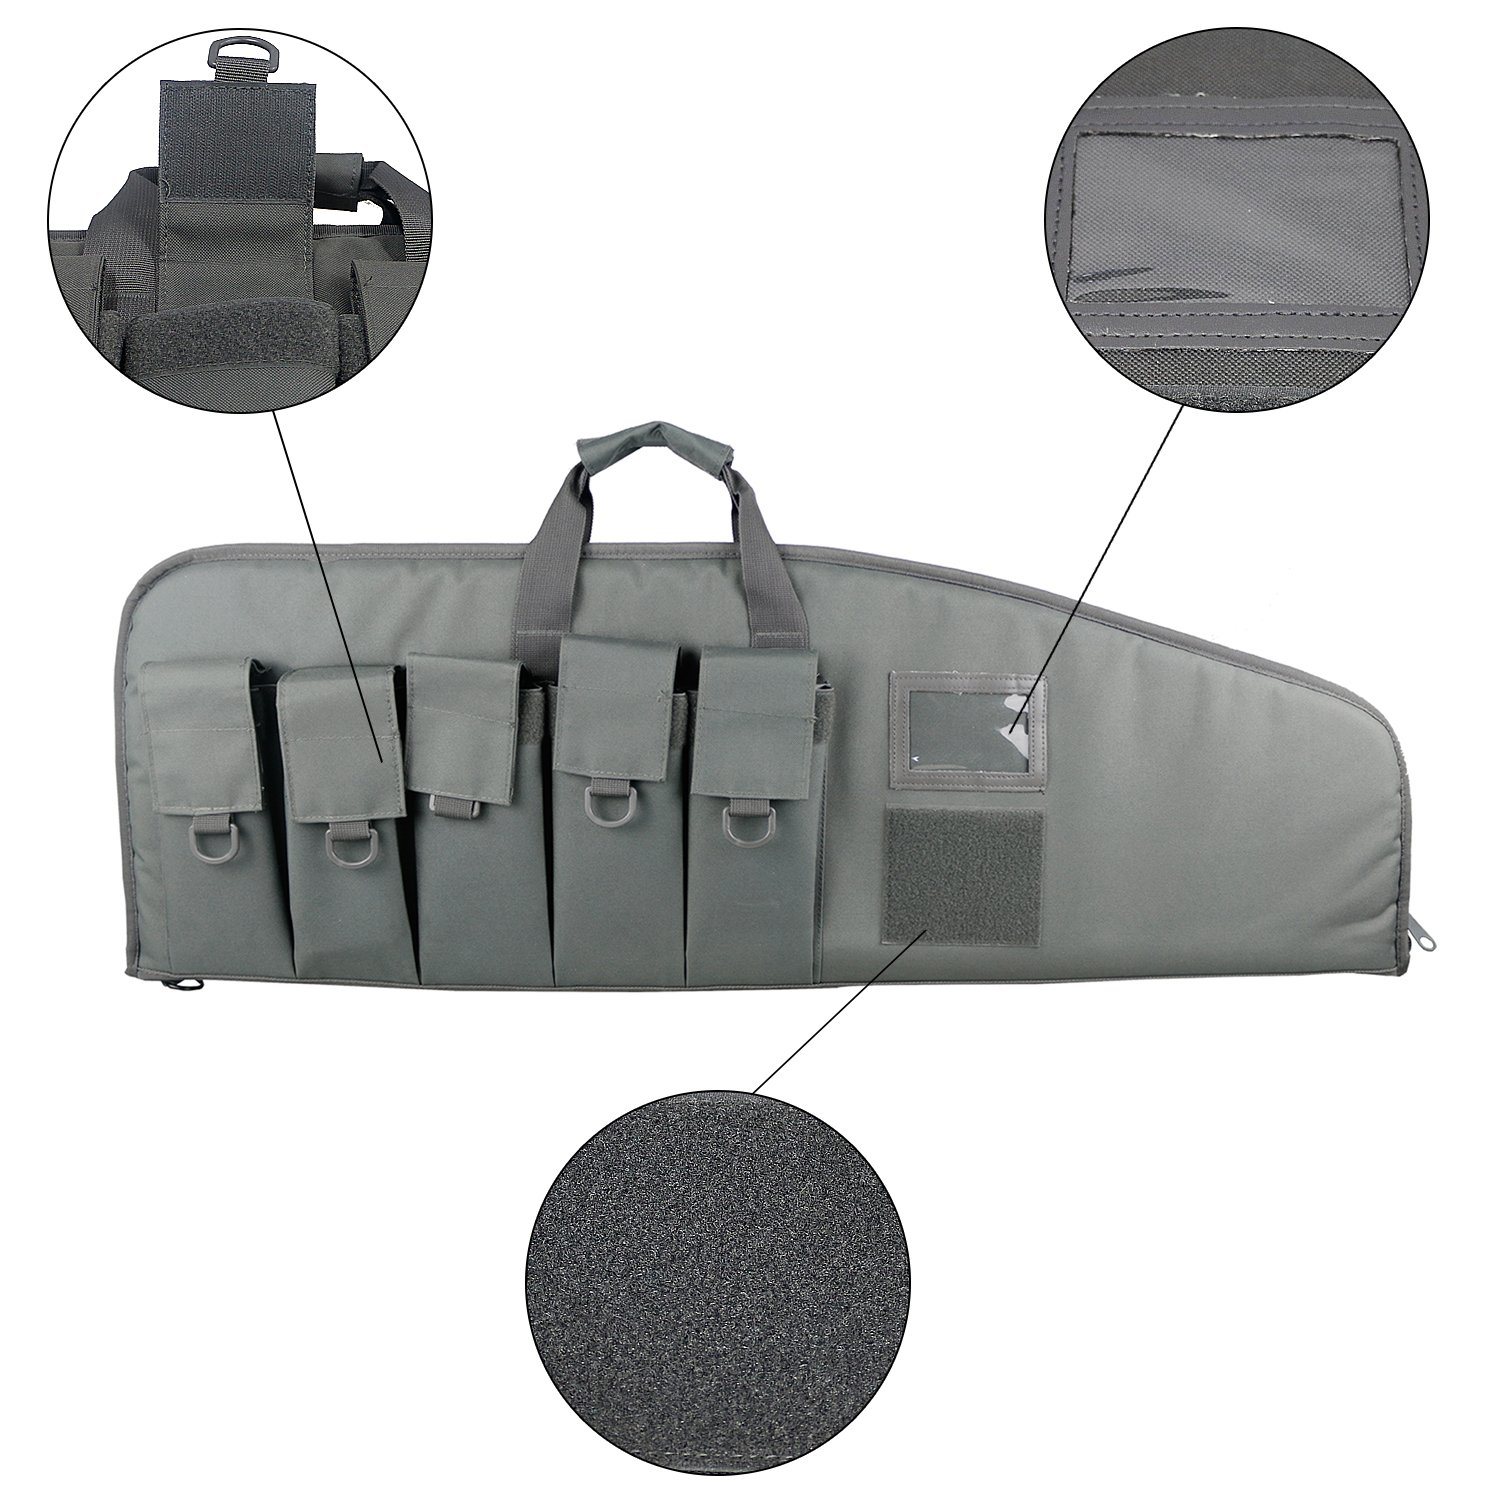 Long Gun Case Military Gun Bag Airsoft Rifle Gun Bag